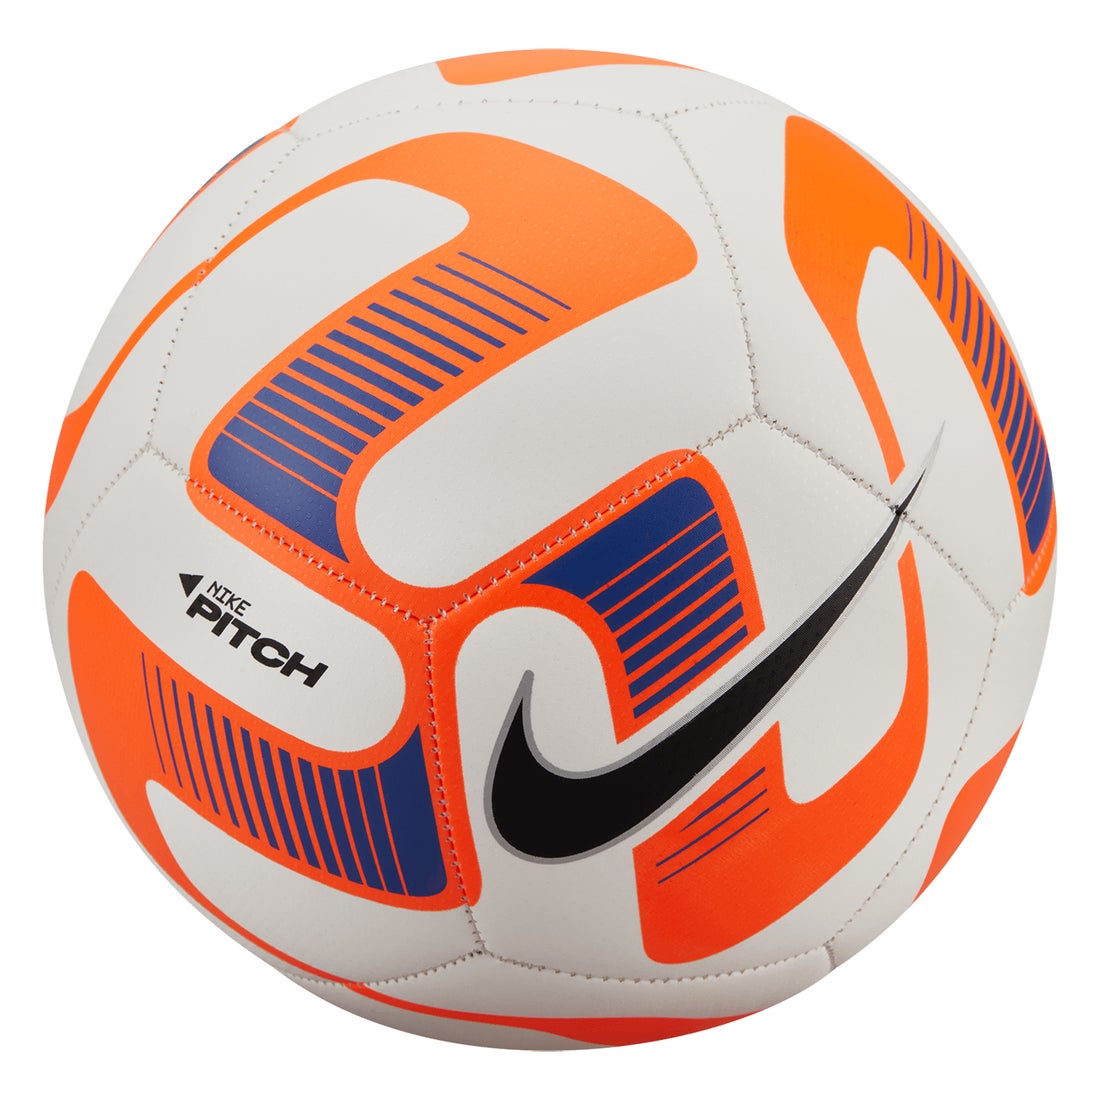 Nike ナイキ ピッチ 5号球 ホワイト オレンジ Dn3600 101 5号 サッカー ボール サッカーショップ Sws